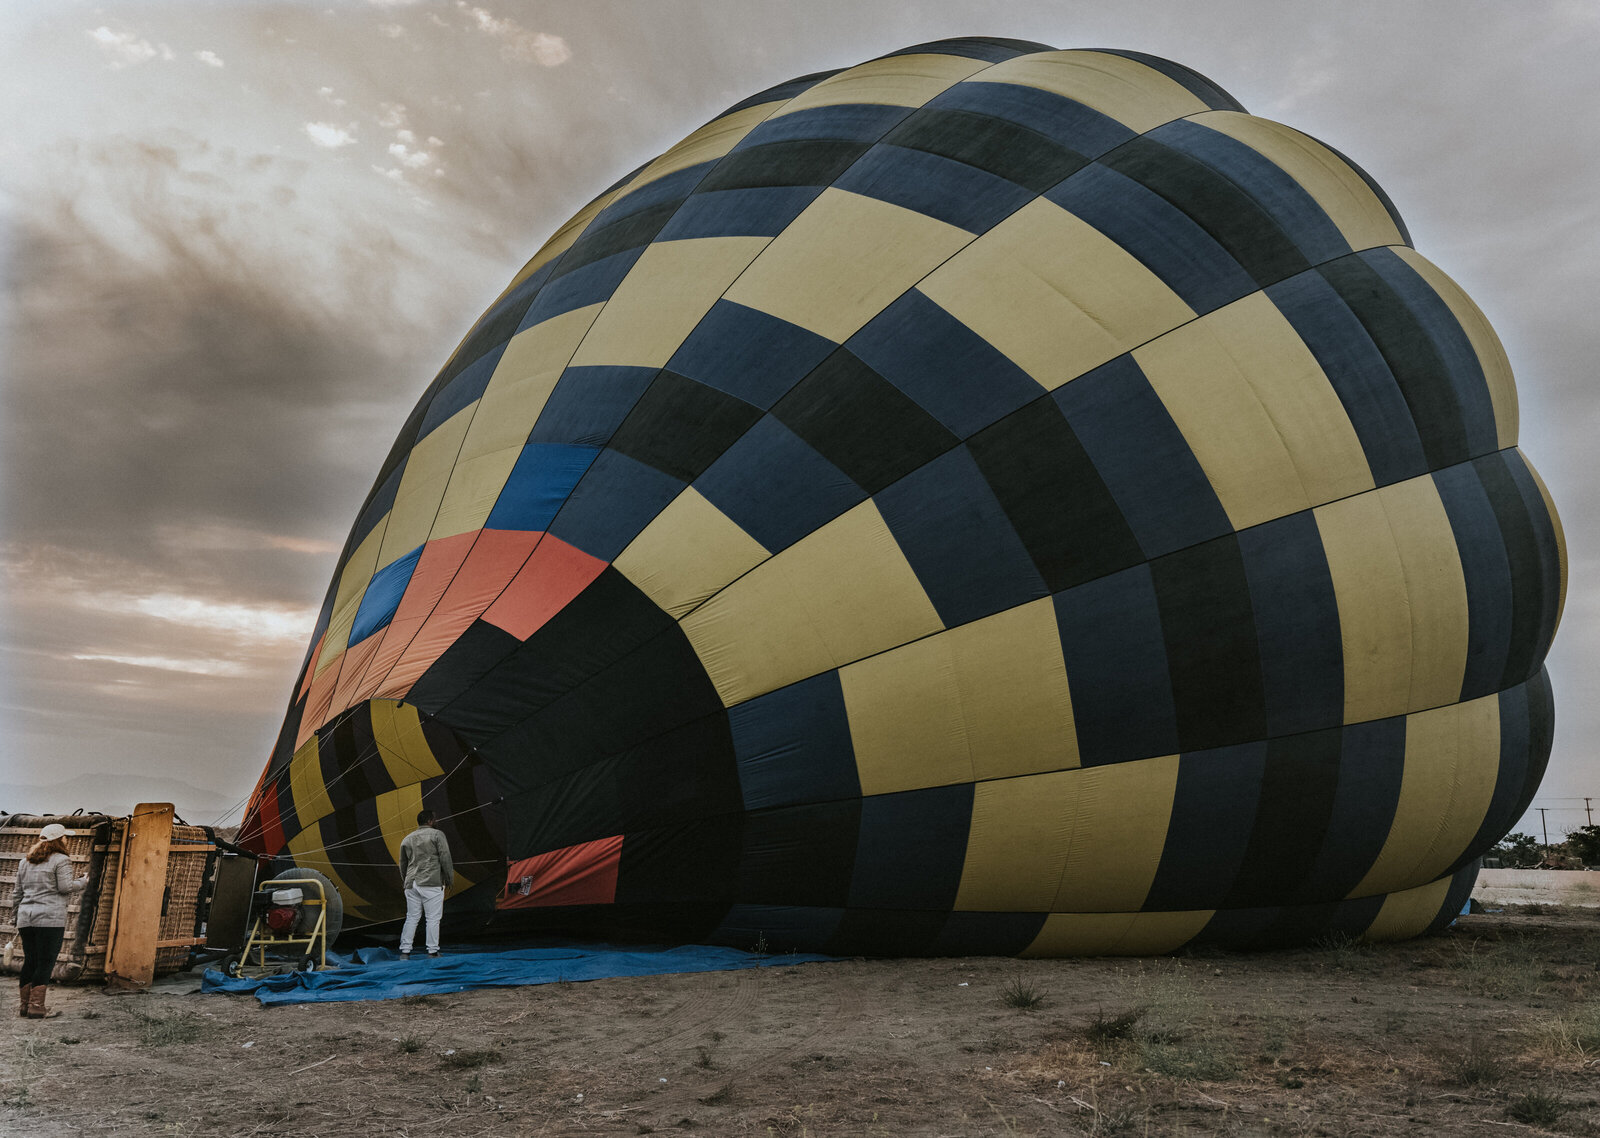 hot-air-balloon-adventure-perris-california-21